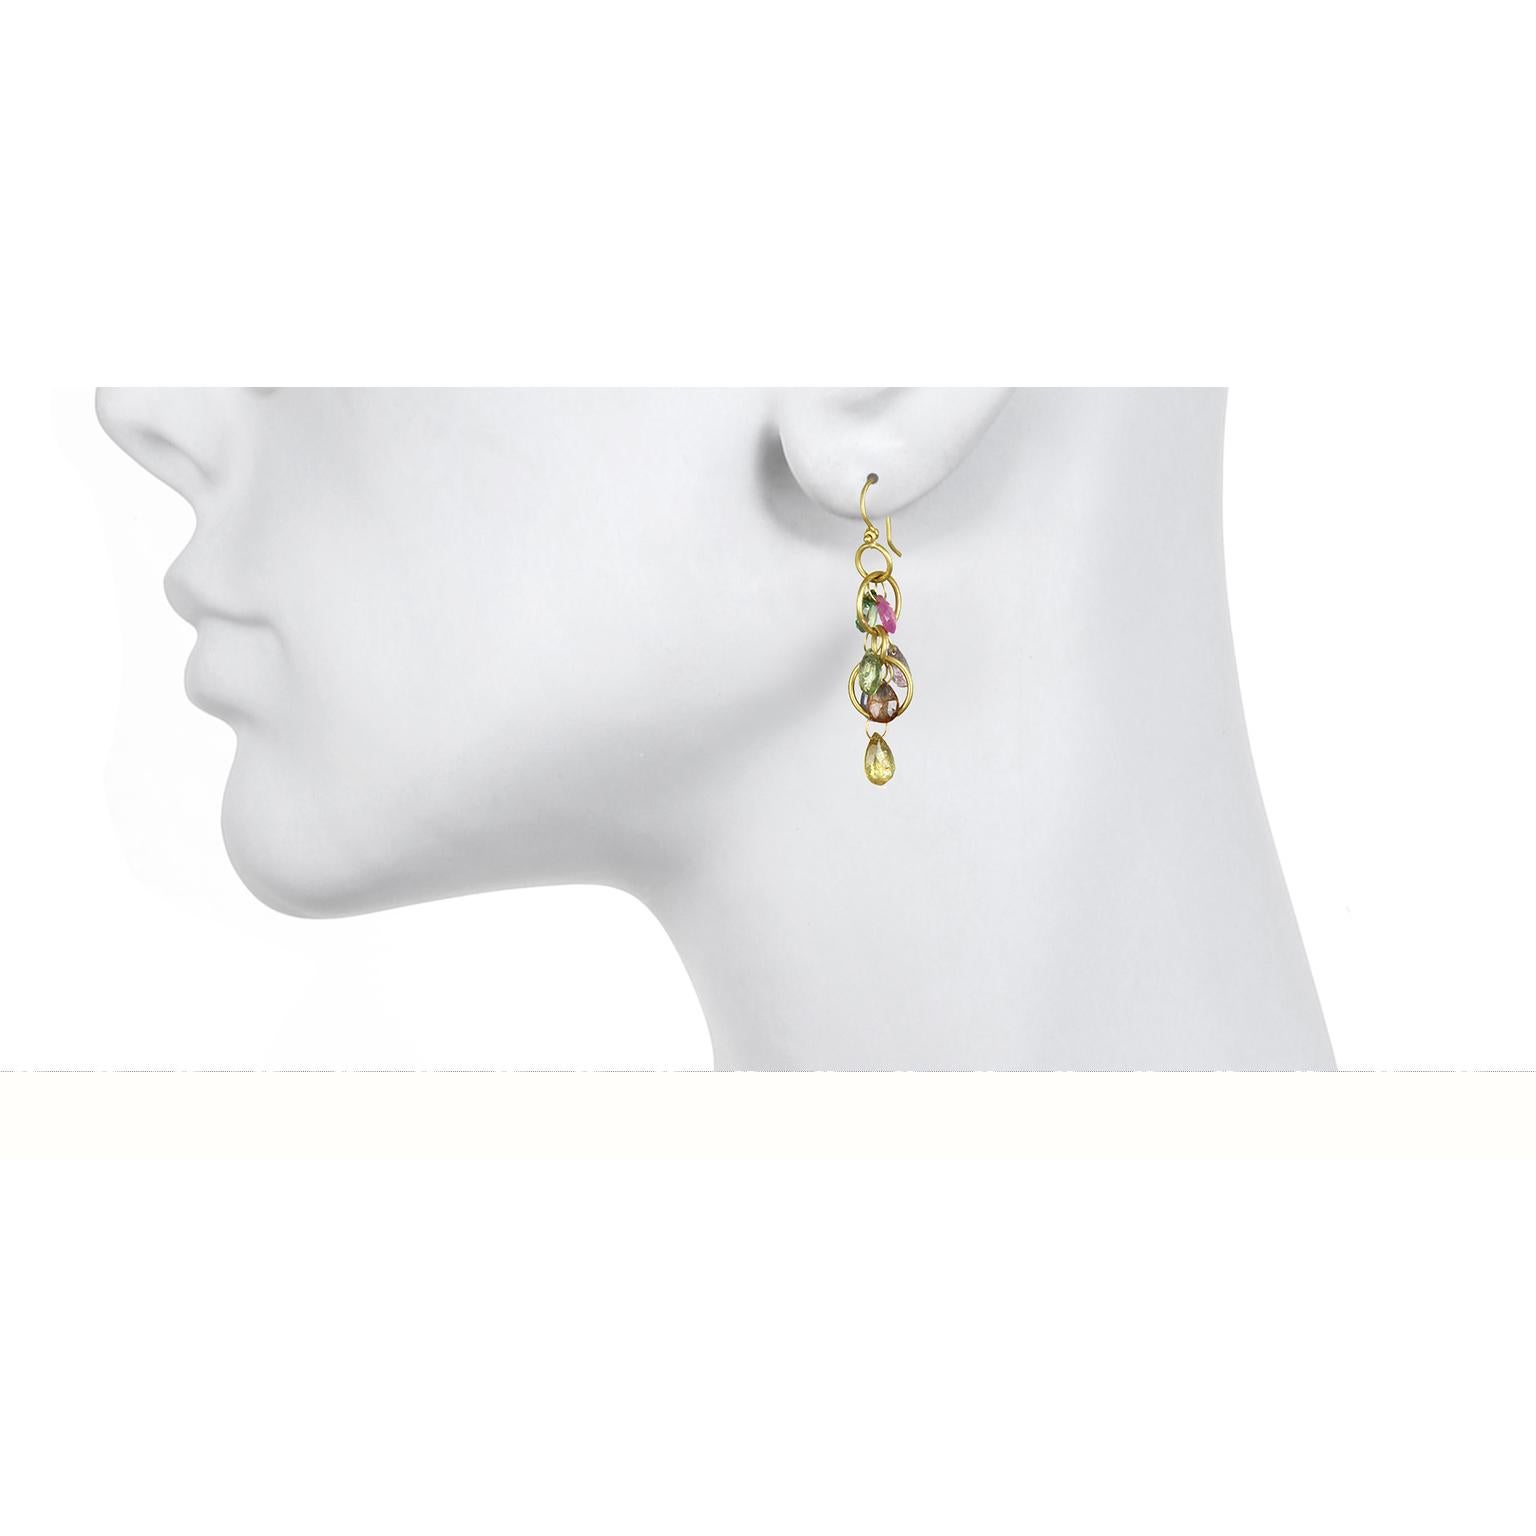 Boucles d'oreilles en or 18 carats avec briolettes, signature de Faye Kim. Fabriqué à la main, coloré, léger et portable.

Longueur :   1.5